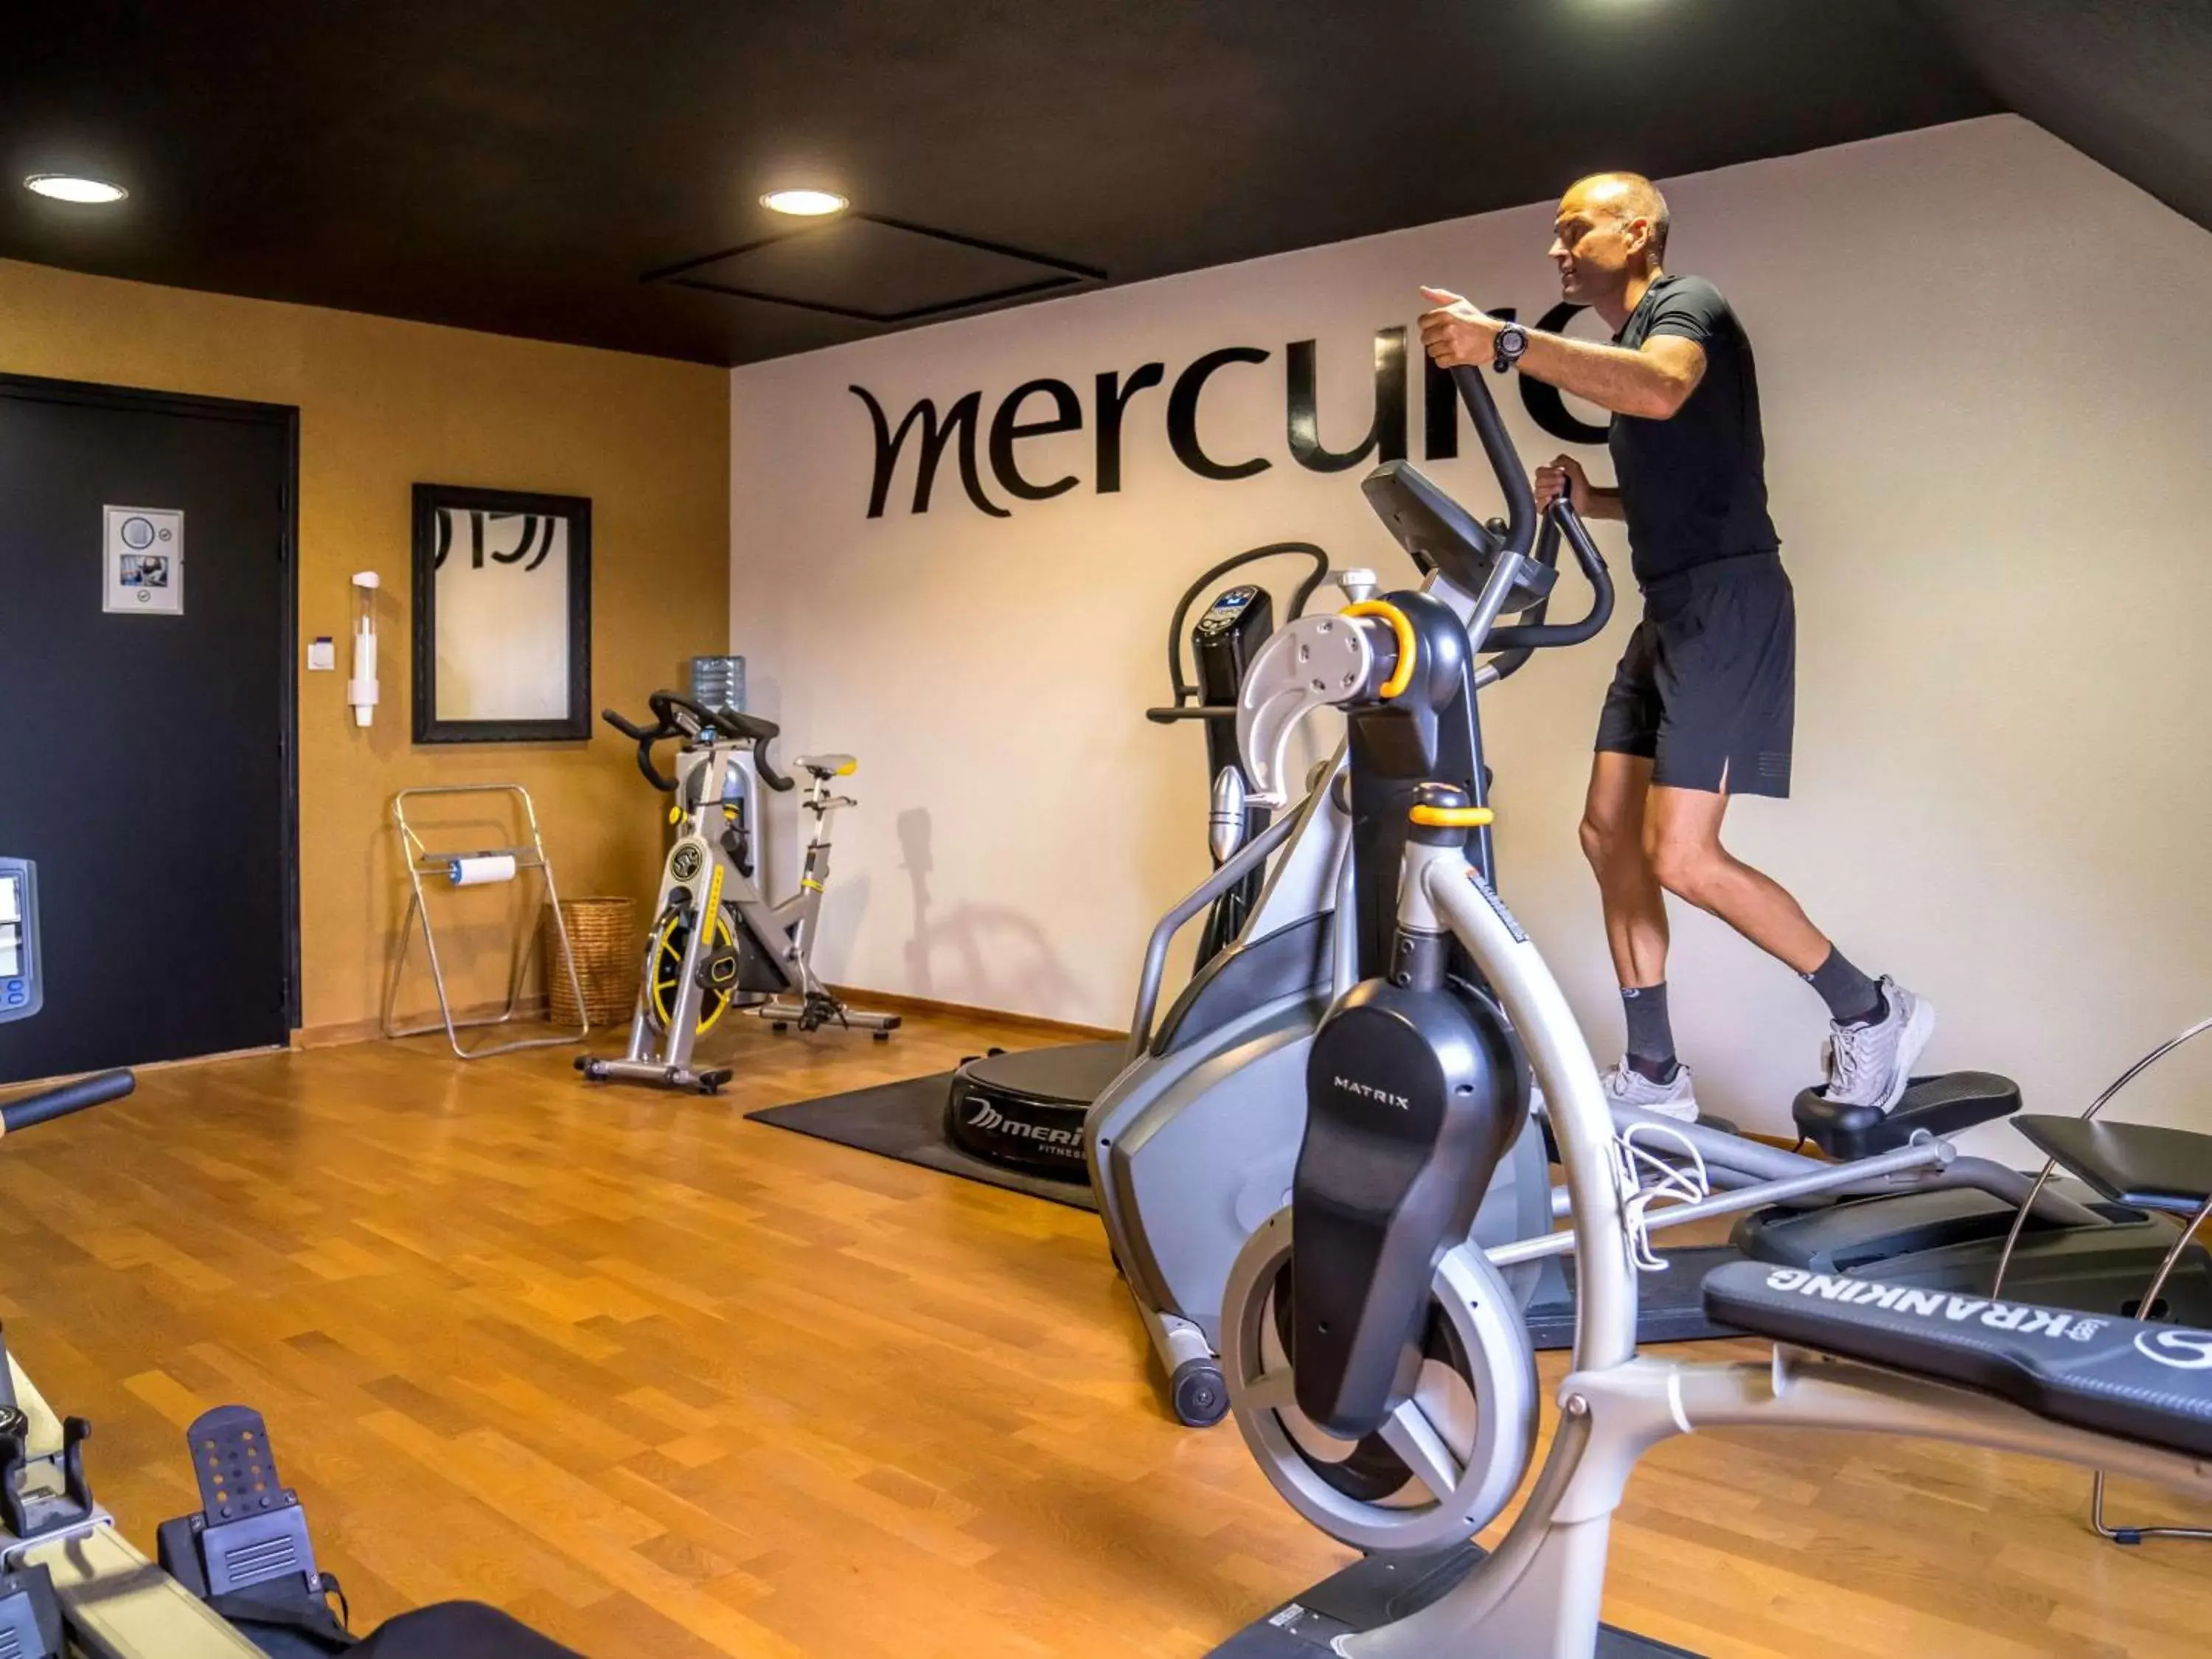 Fitness centre/facilities in Mercure Bords de Loire Saumur